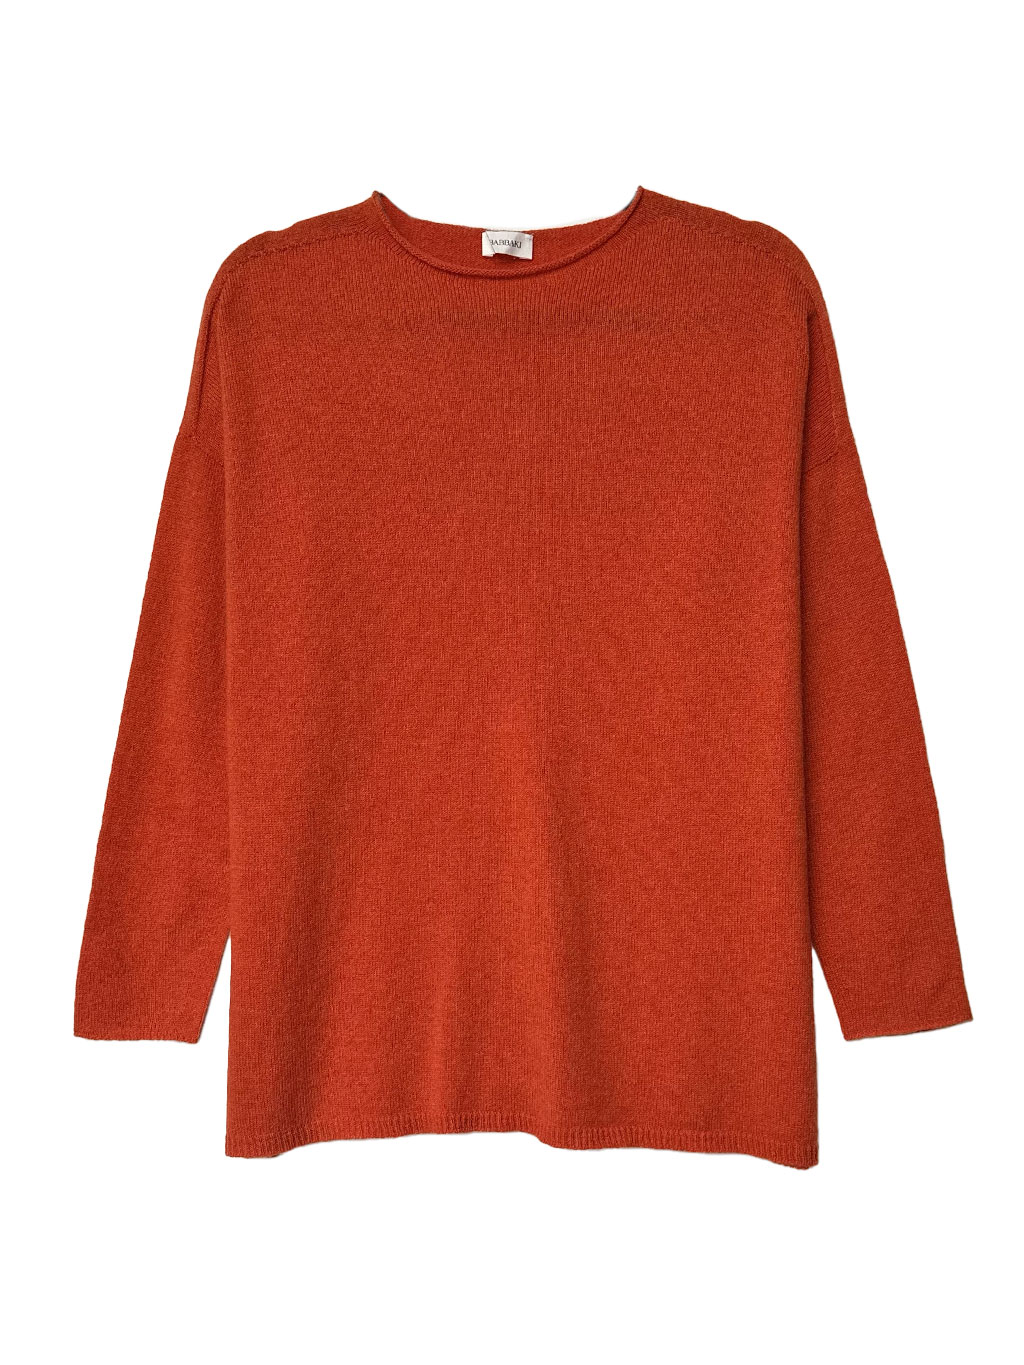 orange-crew-neck-pullover-cashmere